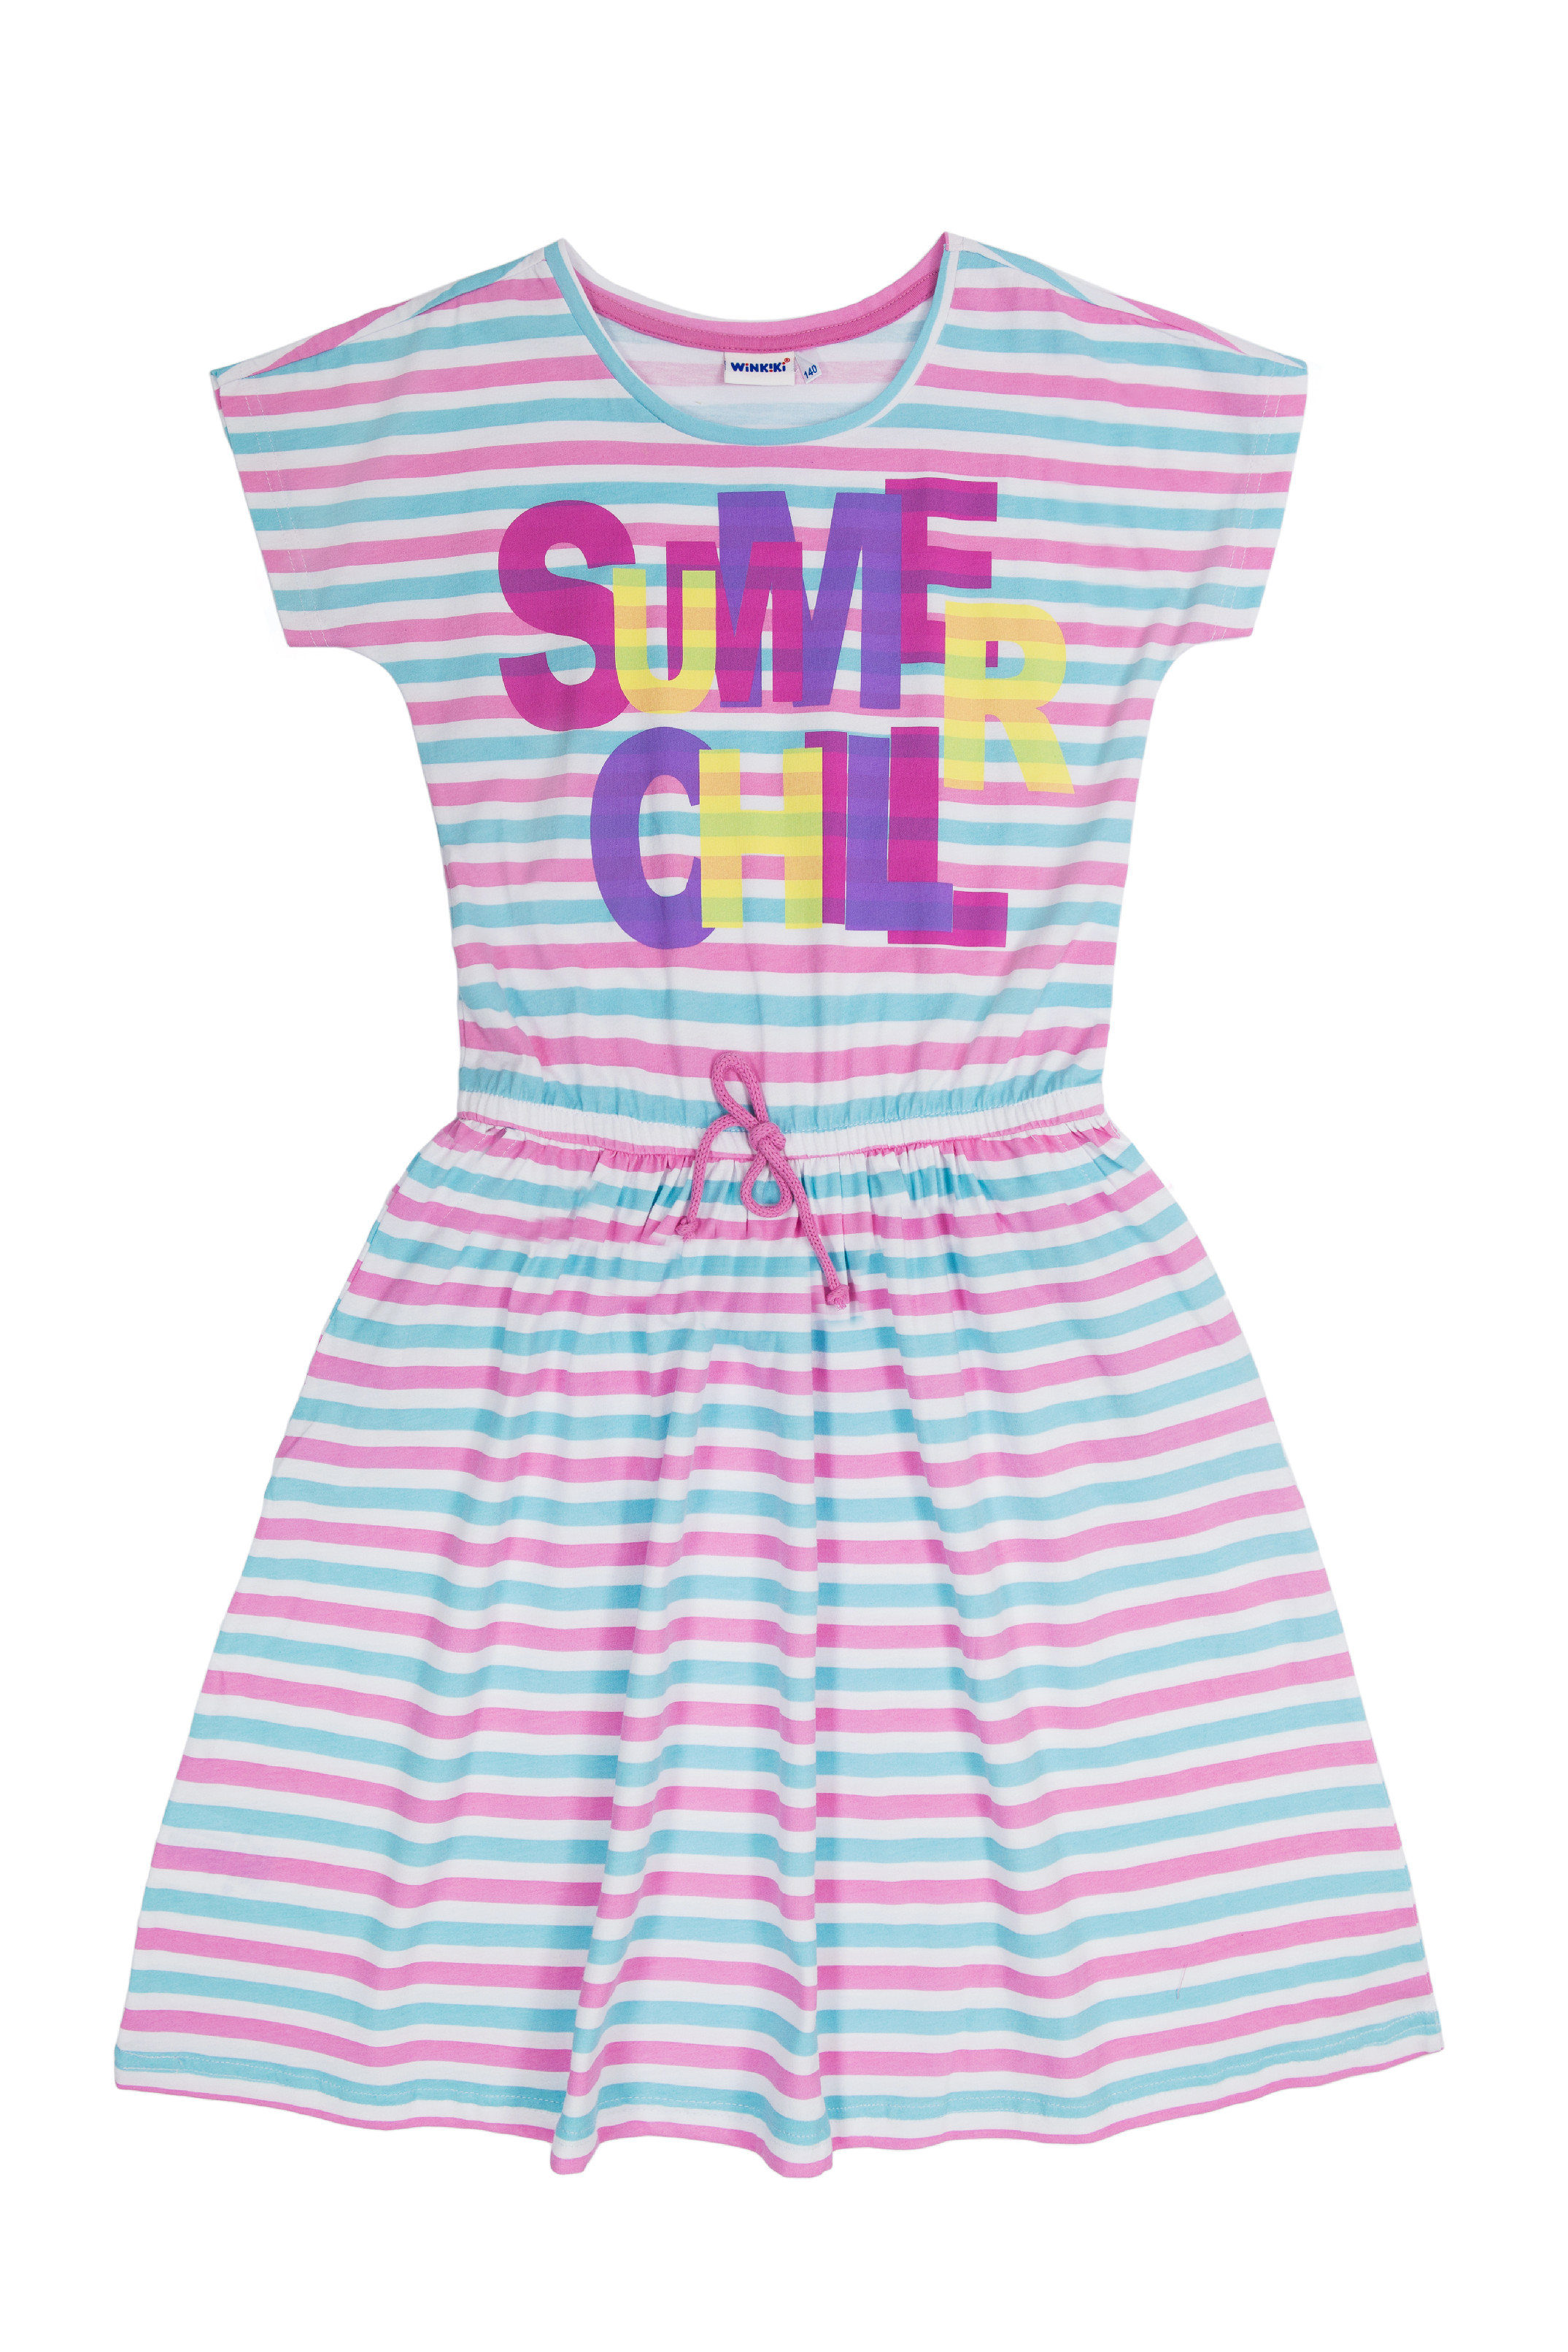 Dívčí šaty - WINKIKI WTG 01802, růžová / proužek Barva: Růžová, Velikost: 164